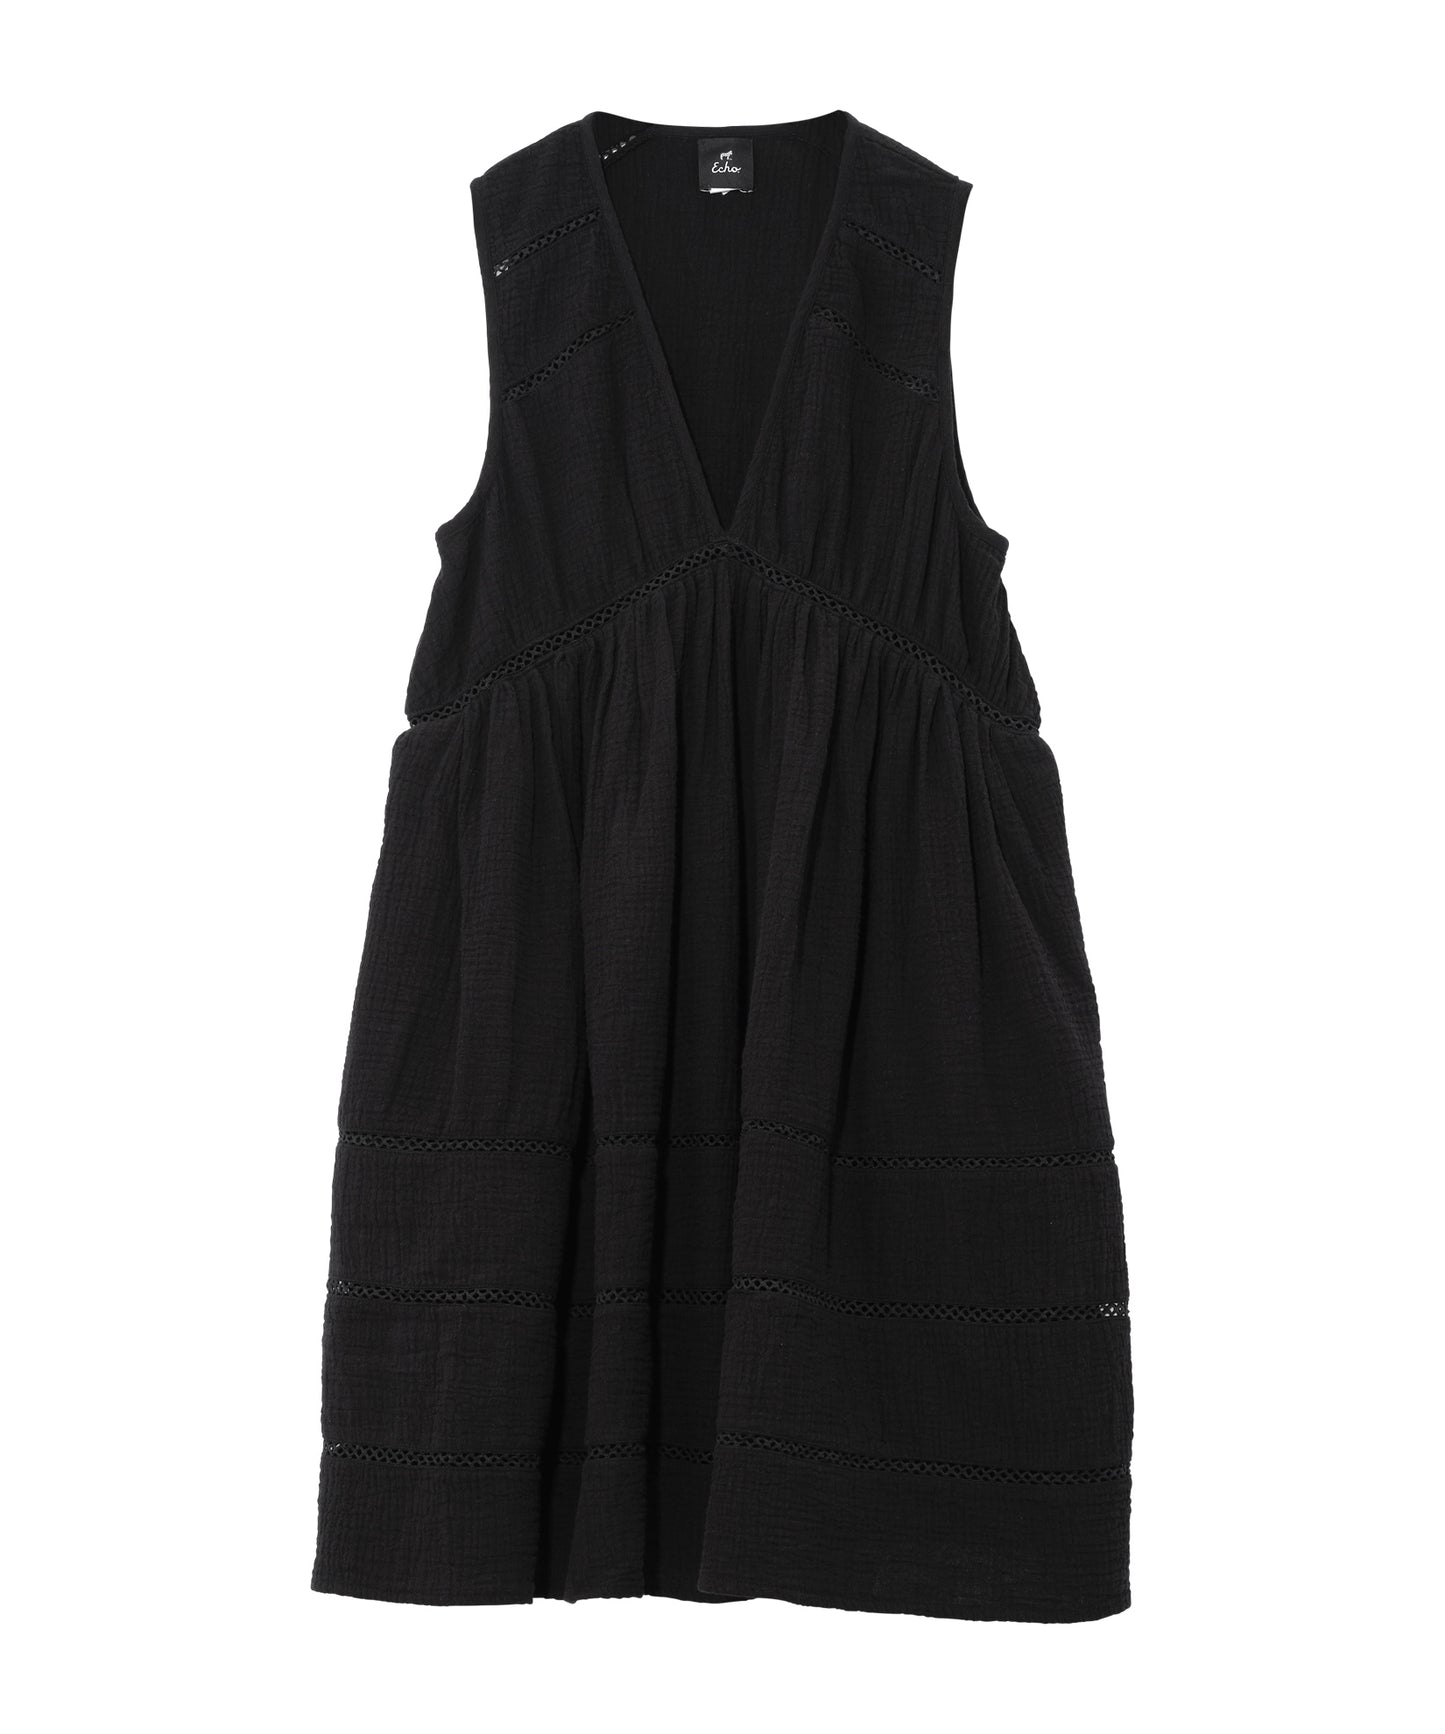 Supersoft Gauze Vesper Dress in color black